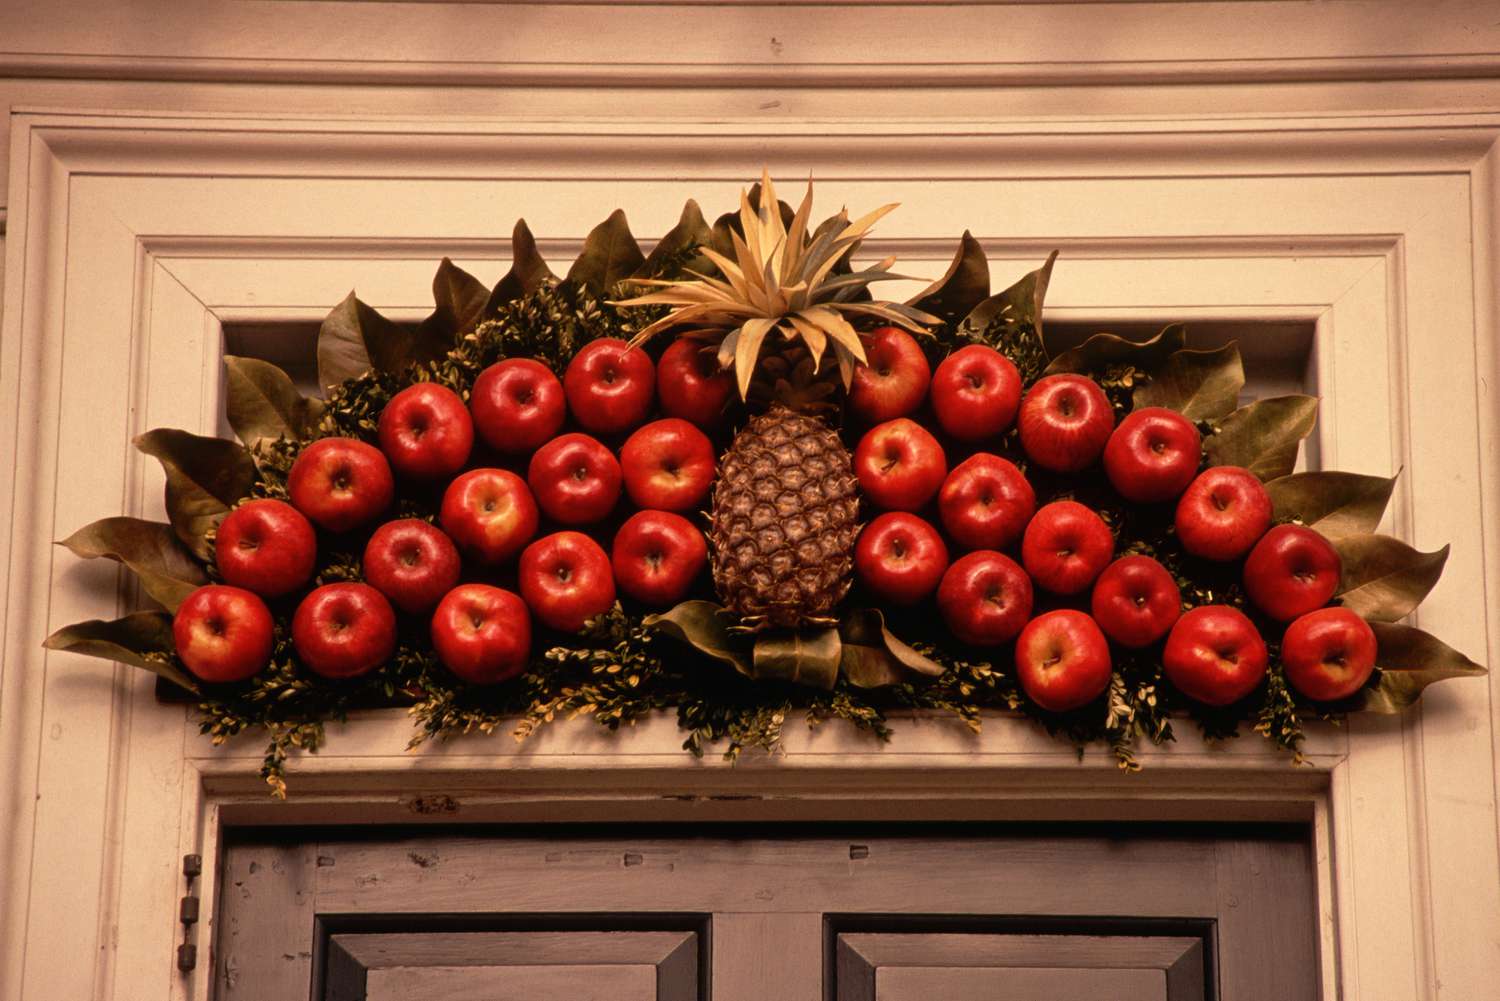 Frutas (manzanas y una piña) expuestas sobre una puerta como decoración navideña al aire libre.